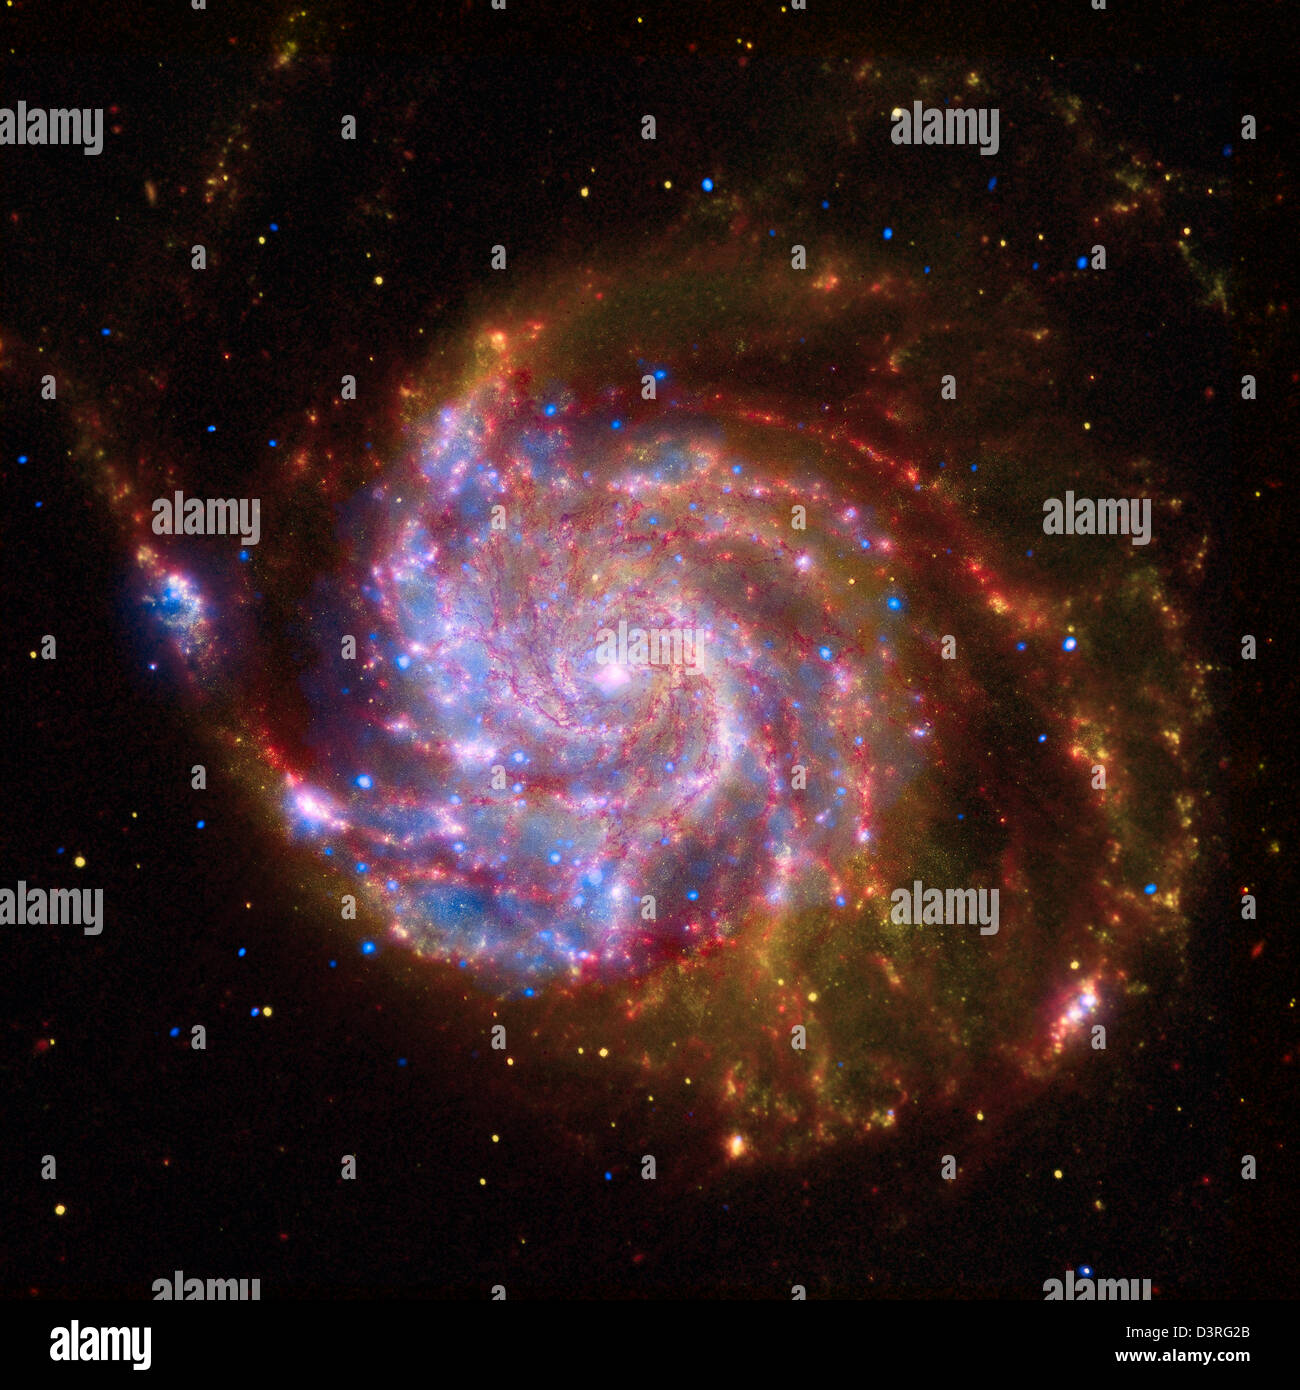 Une image spectaculaire pour célébrer l'Année internationale de l'astronomie : une galaxie spirale vue de face d'environ 22 millions d'années-lumière de la terre. Banque D'Images